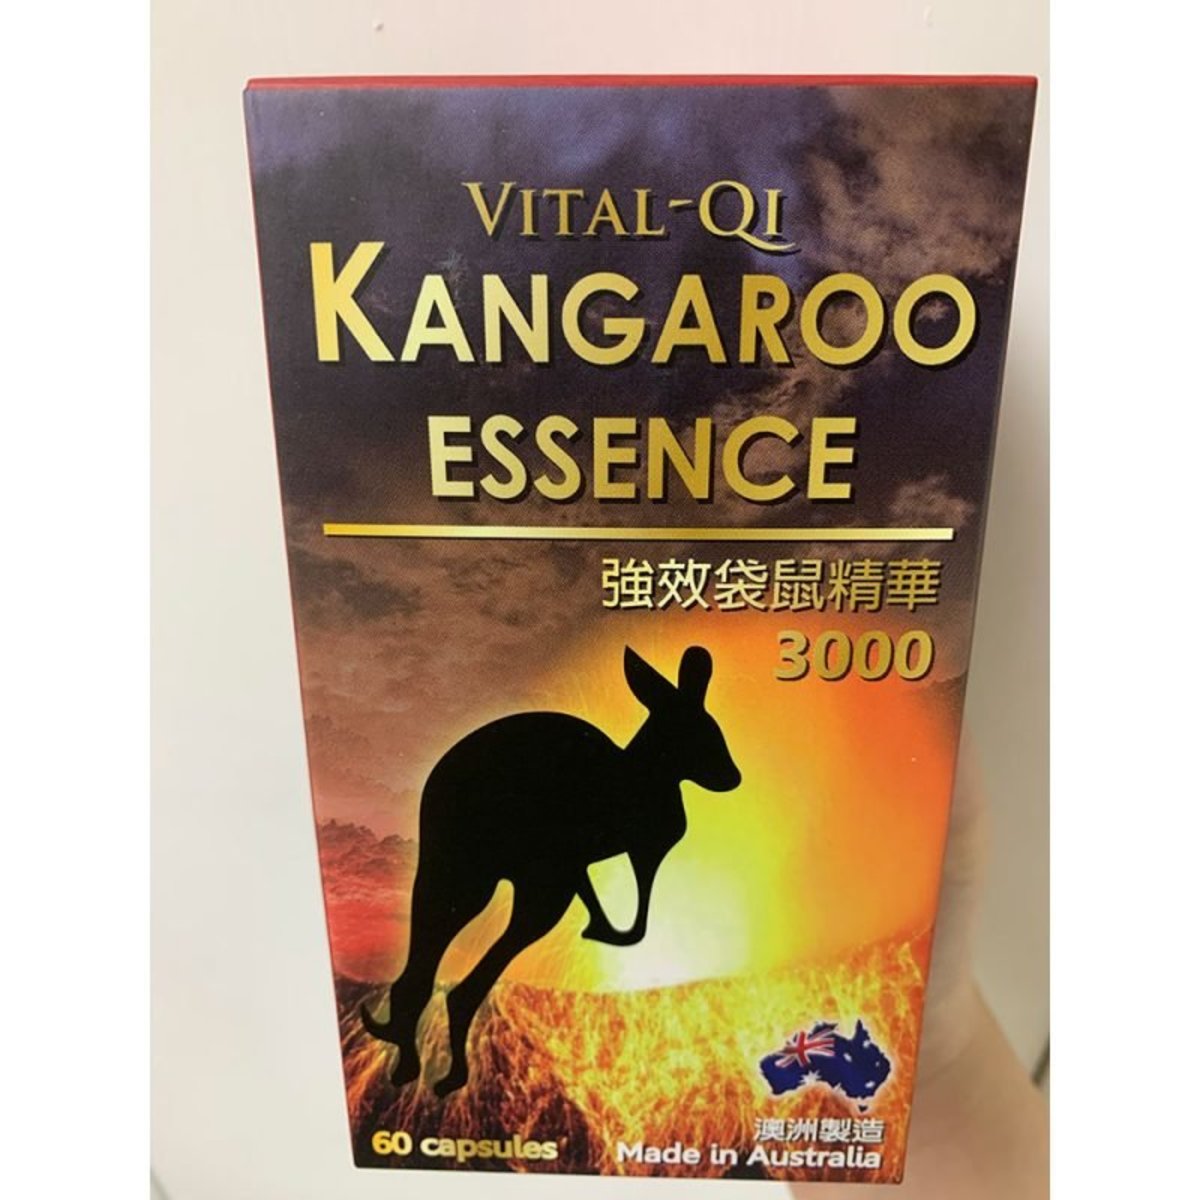 Fuzhengqi - Fuzhengqi 10:1 Concentrated Formula Potent Kangaroo Extract (60 Capsules) 